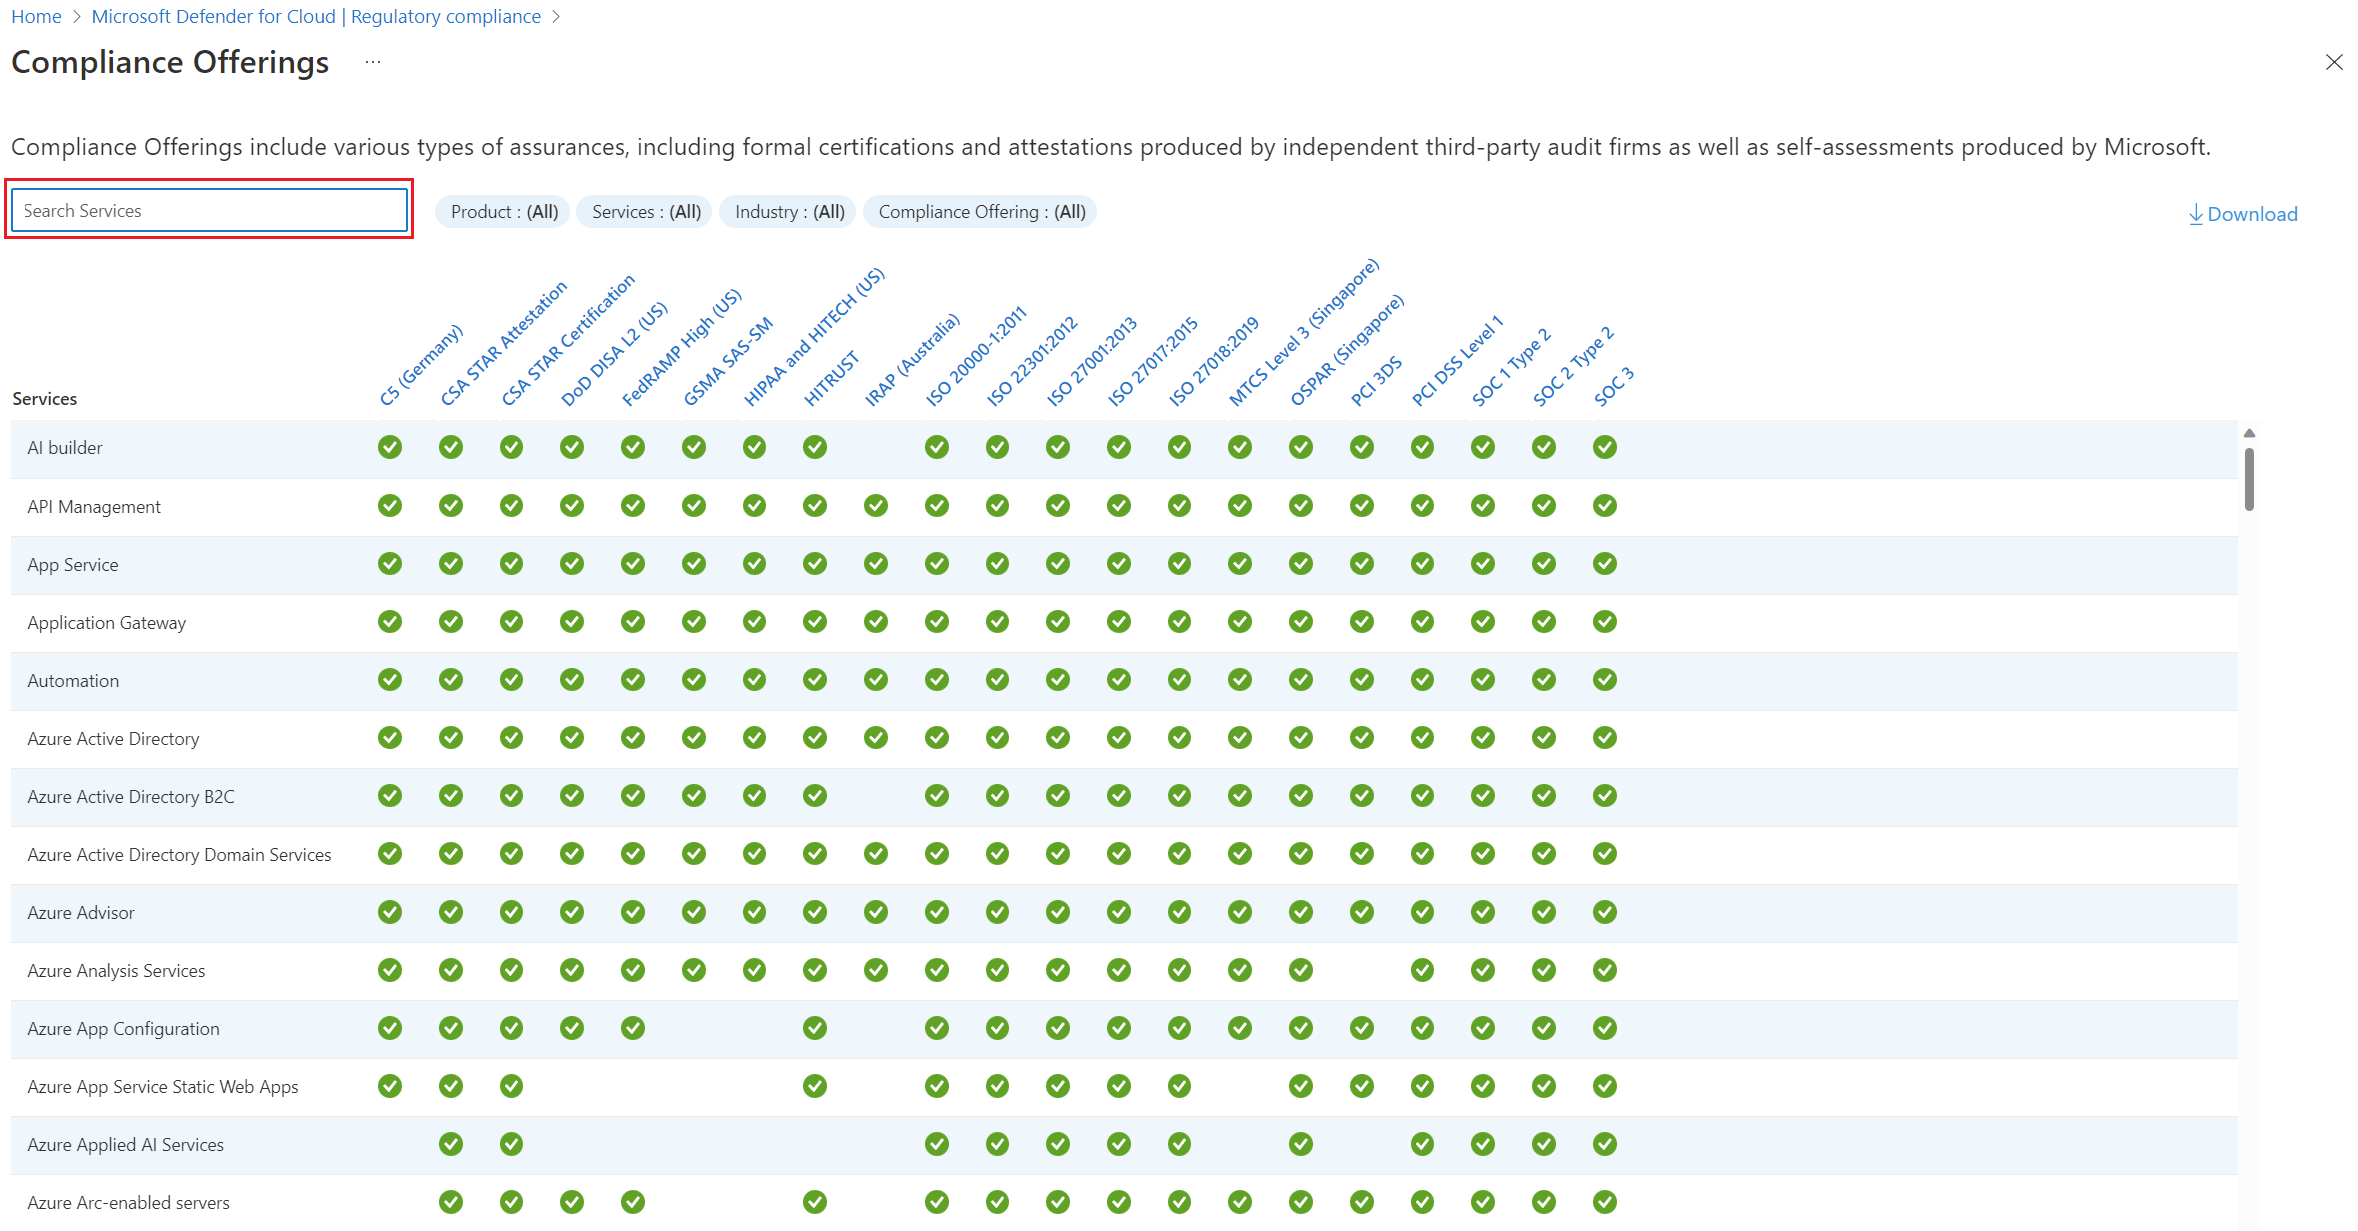 Captura de tela da tela de oferta de conformidade com a barra de pesquisa realçada.